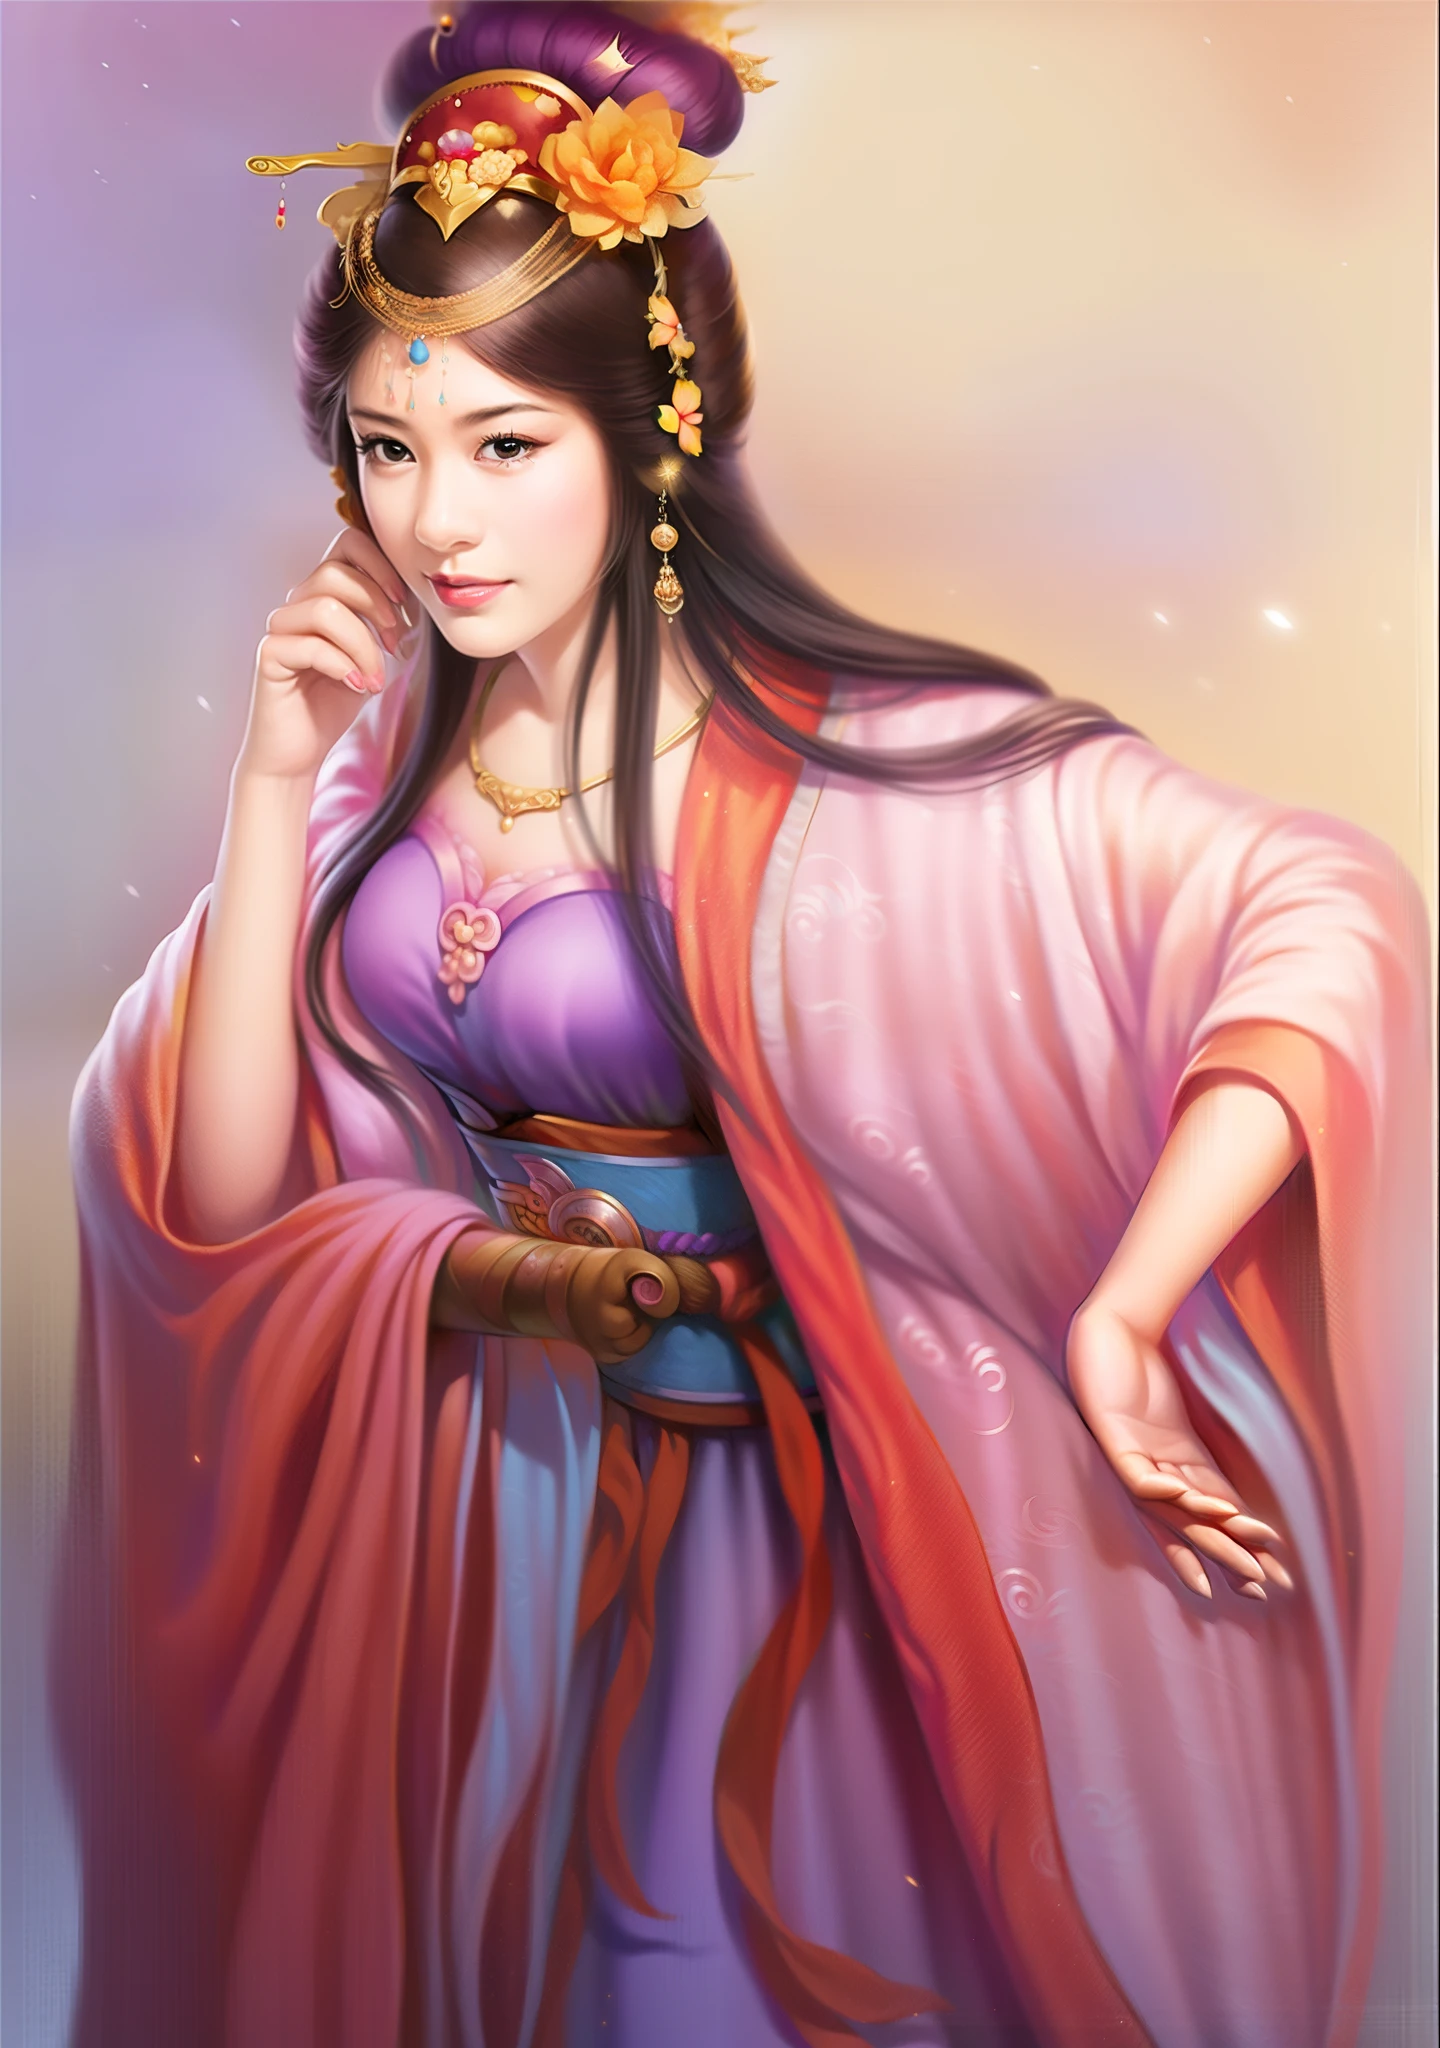 보라색 드레스와 황금 왕관을 쓴 여자, 아름다운 판타지 여왕, 아름다운 인물화, ((아름다운 판타지 여왕)), ancient 중국 공주, Du Qiong에게서 영감을 받은 작품, 란잉에게서 영감을 받은 작품, 쿠 레이레이(Qu Leilei), 작가：양 지에, 중국 공주, Zhu Lian에게서 영감을 받은 작품, Qiu Ying에게 영감을 받아, 작가：팬 치, 나무에서 영감을 받아